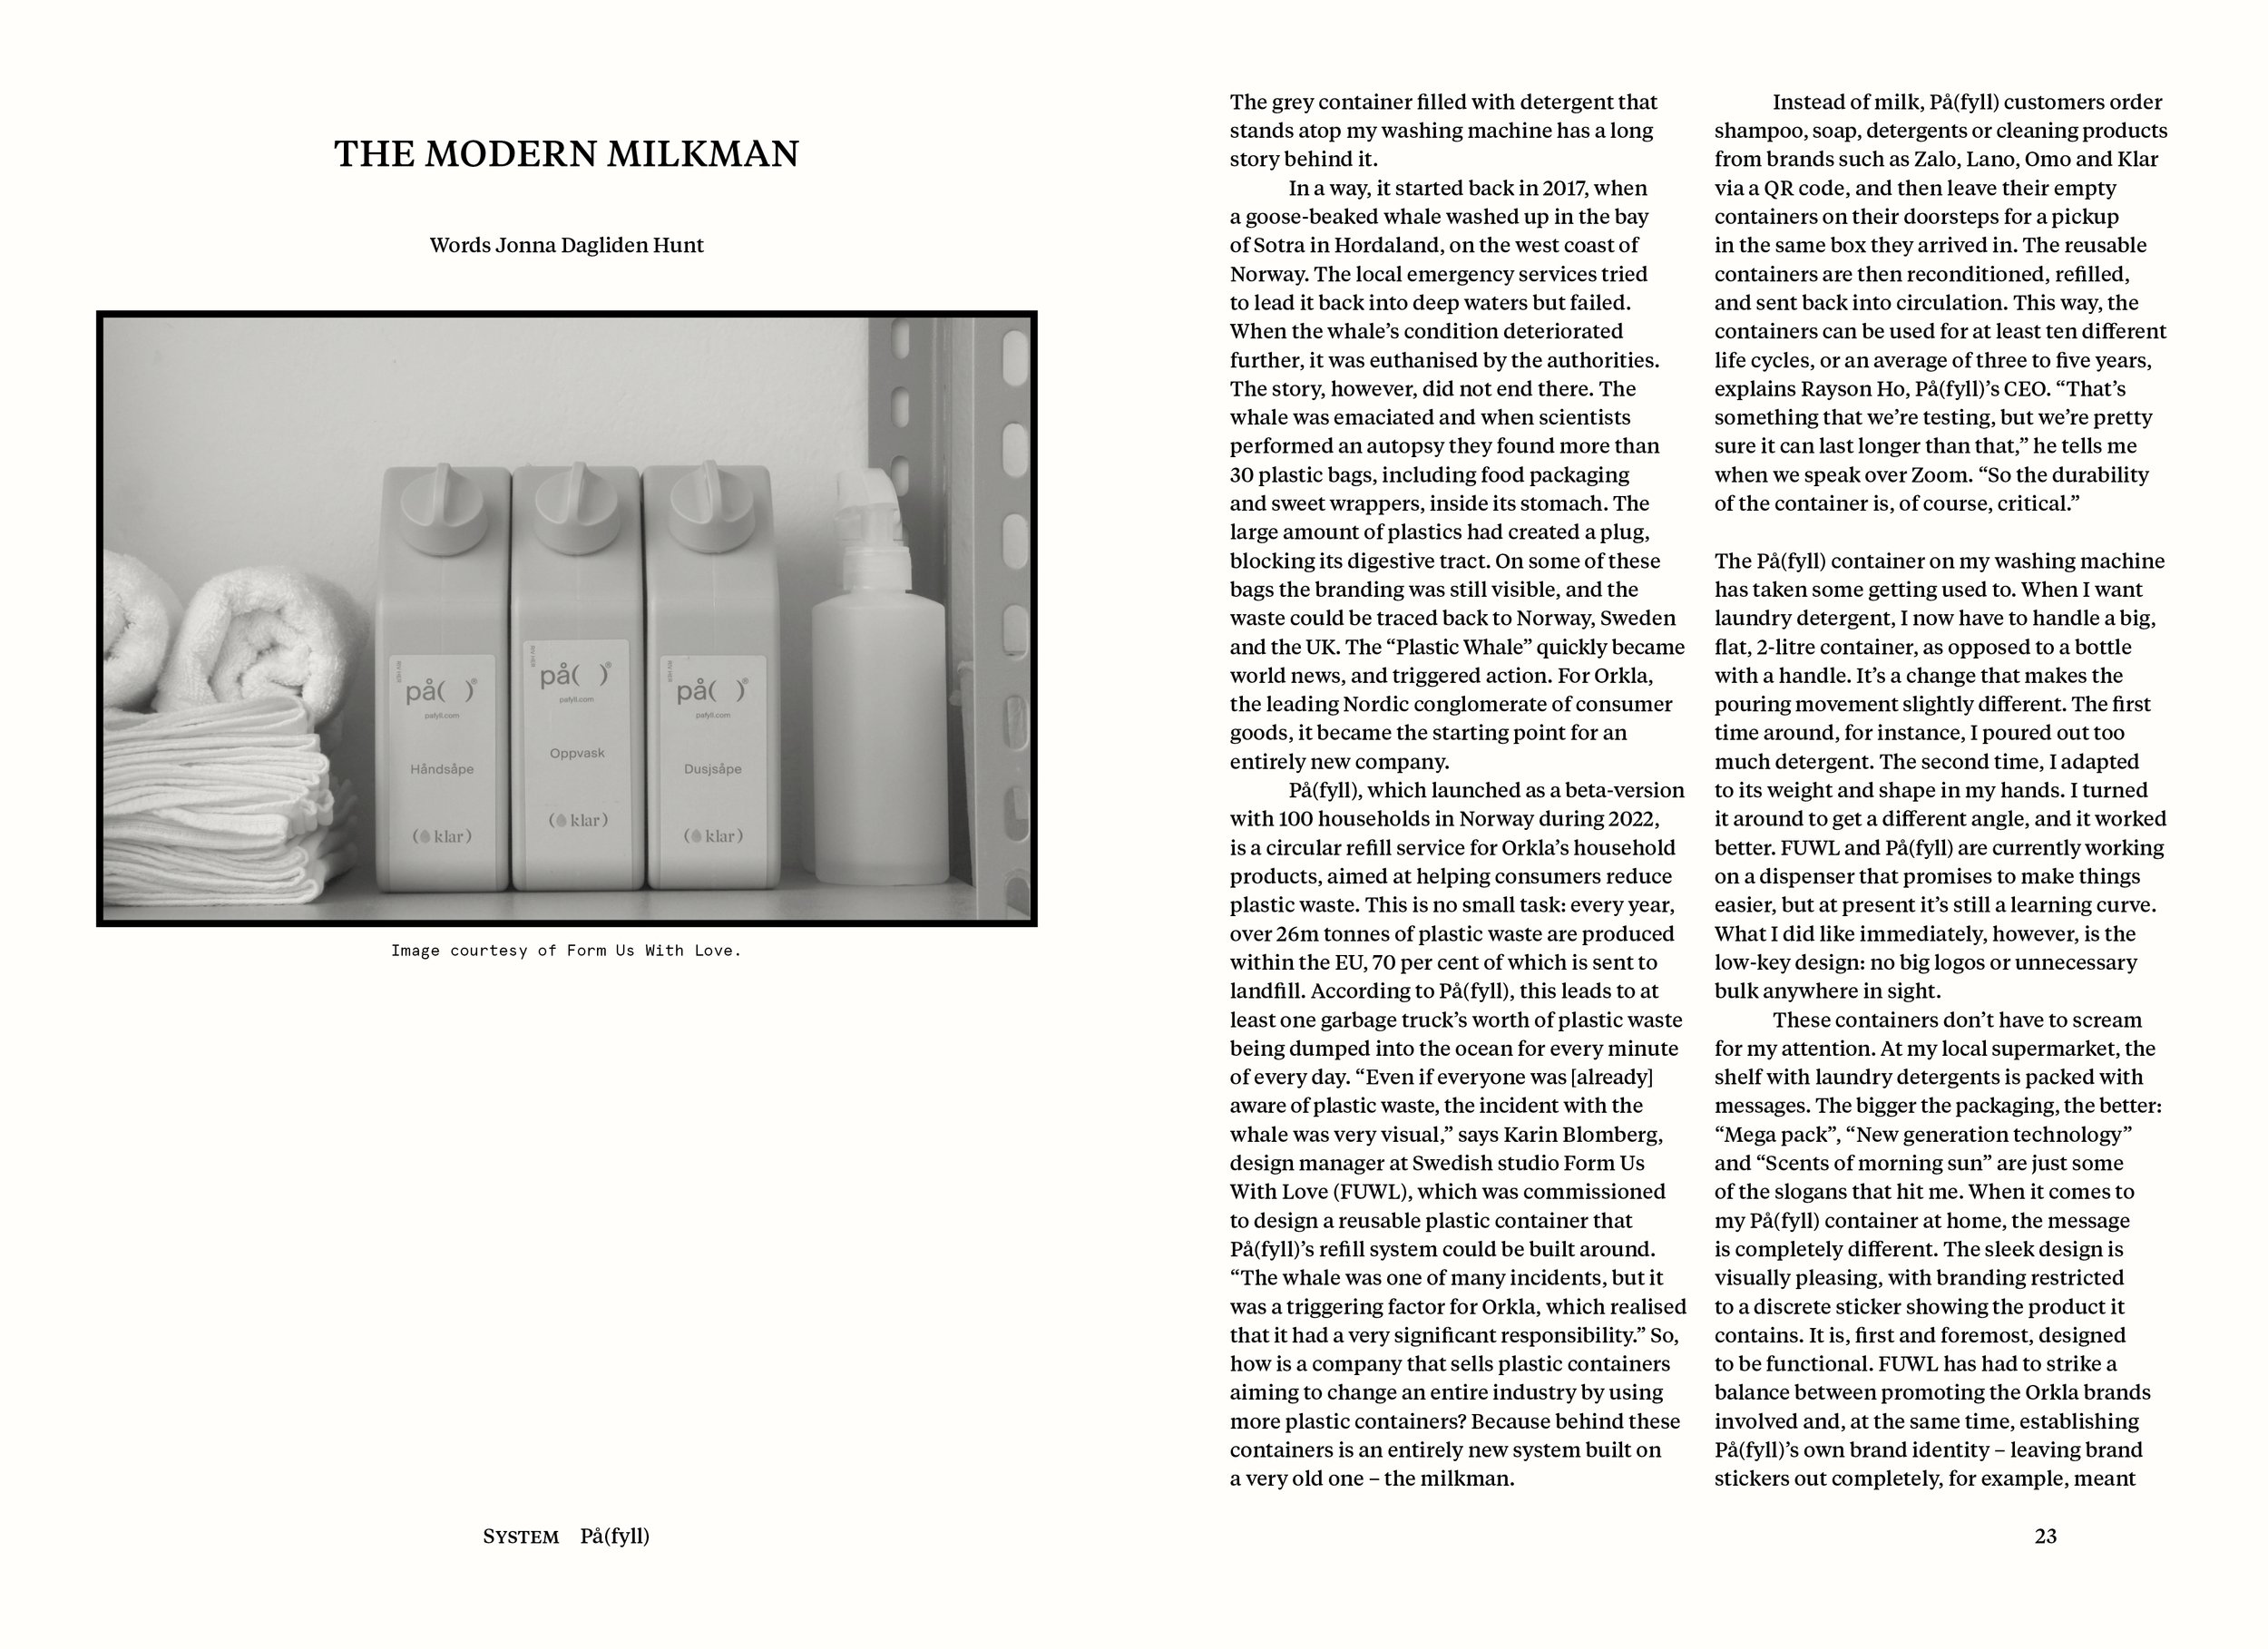  ‘The Modern Milkman’ by Jonna Dagliden Hunt 